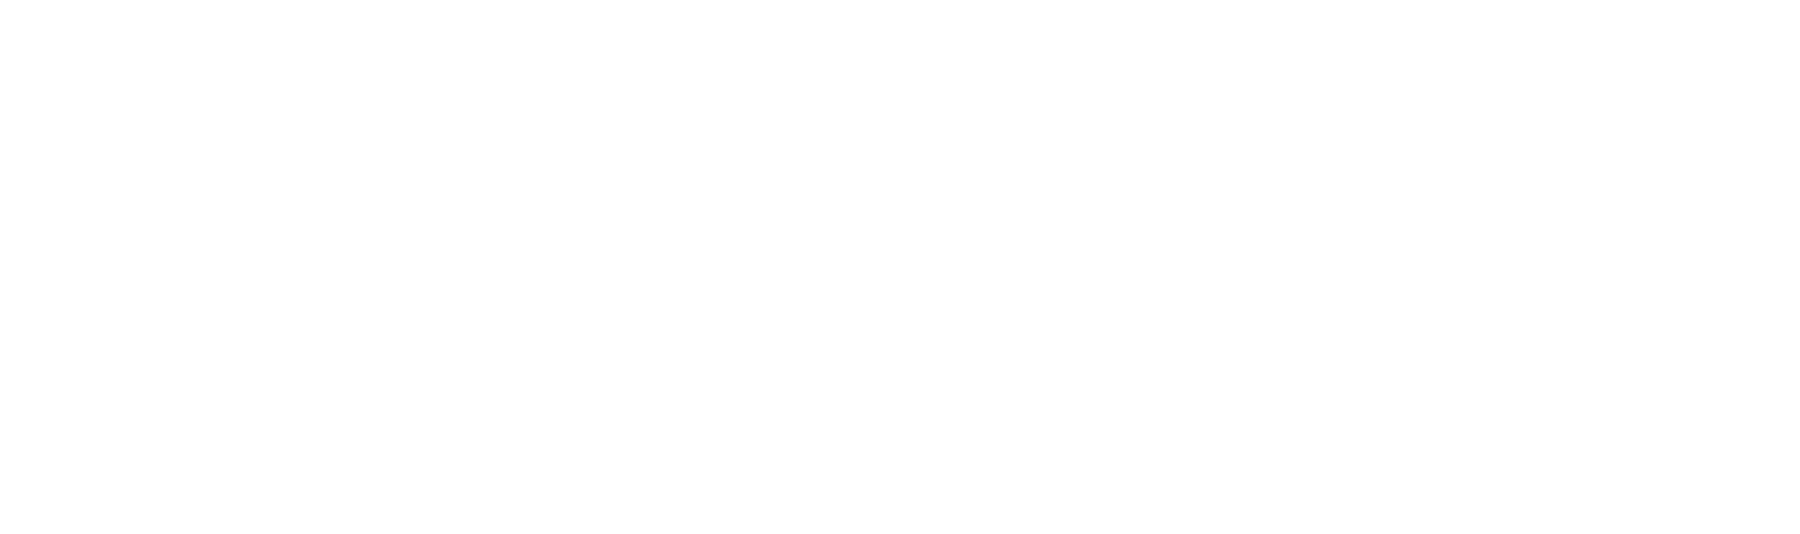 Calvary Church, Sussex